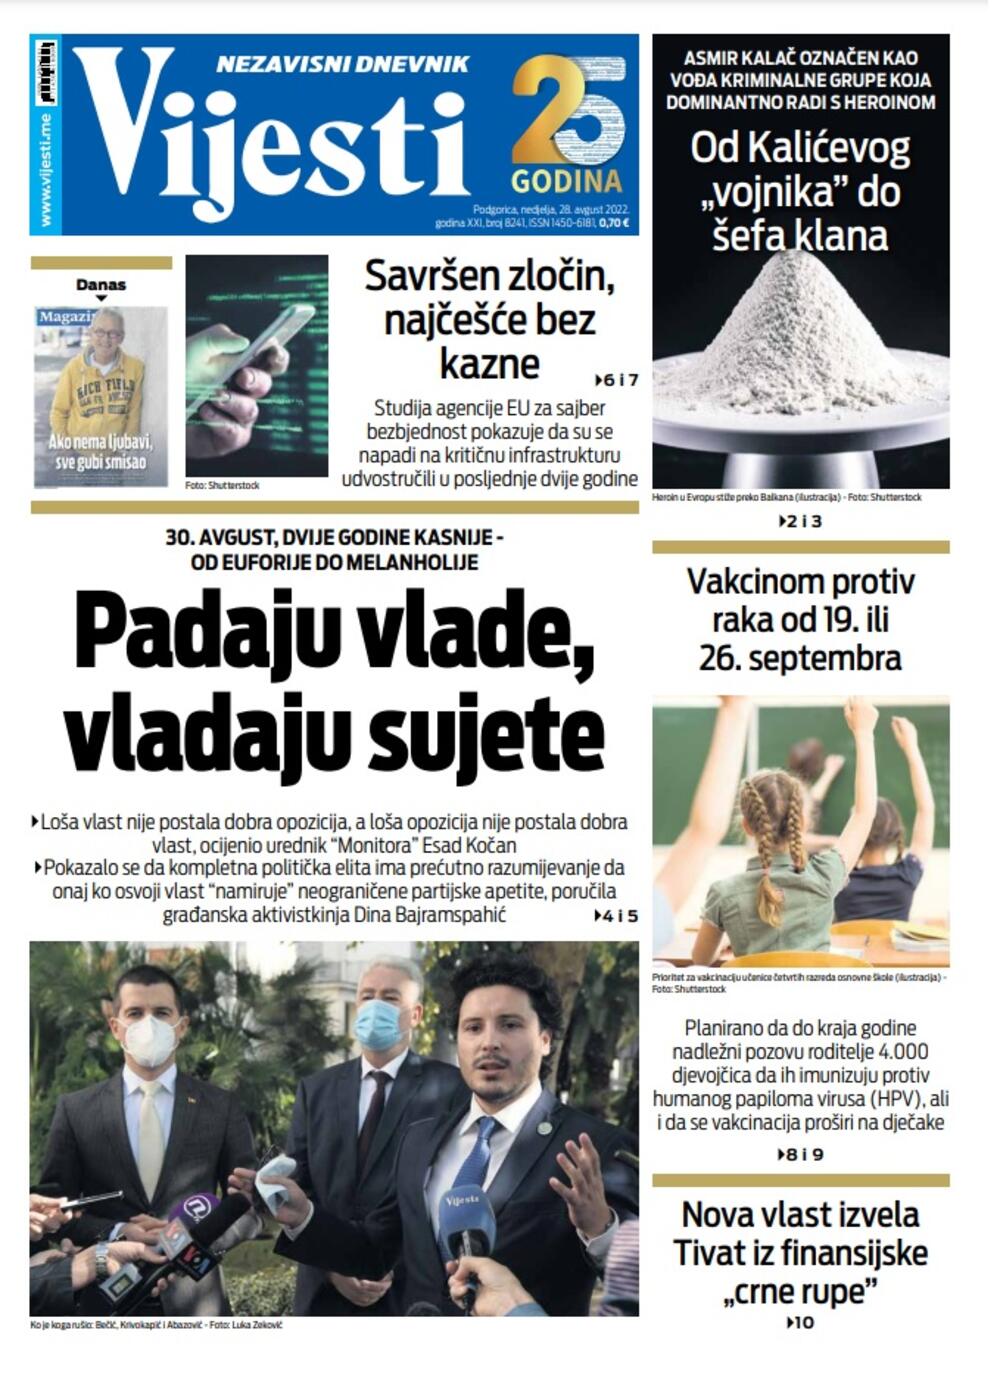 Naslovna strana "Vijesti" za 28. avgust 2022., Foto: Vijesti